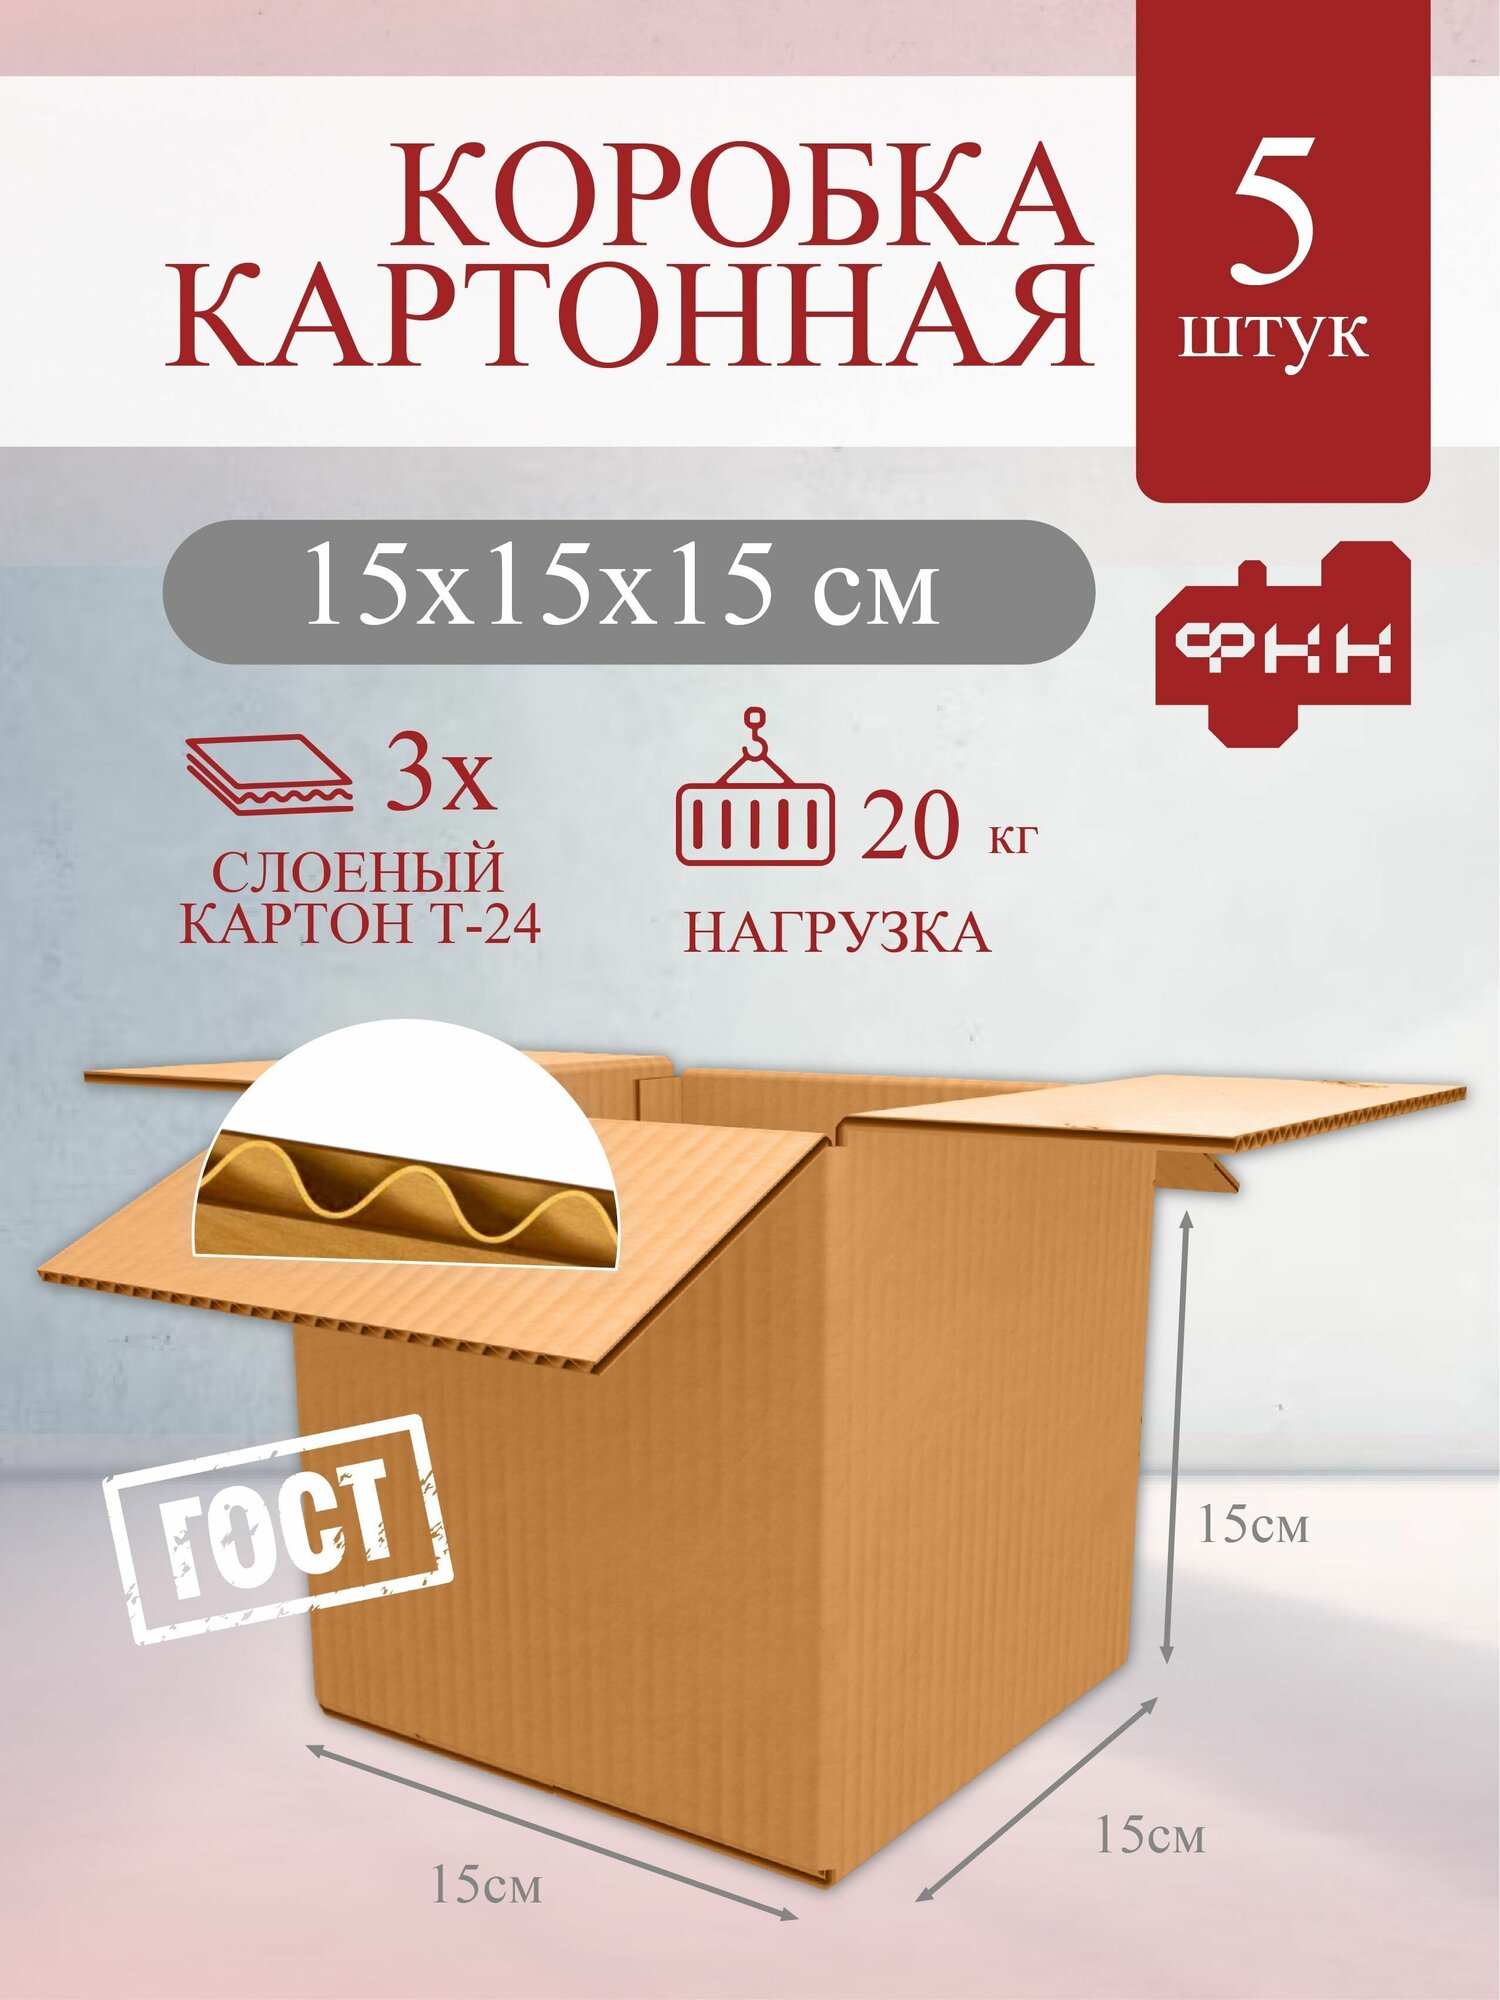 Картонная коробка для маркетплейсов 15x15x15 см Т24 профиль С 5 шт, для хранения вещей, упаковки, маркетплейс, коробки картонные